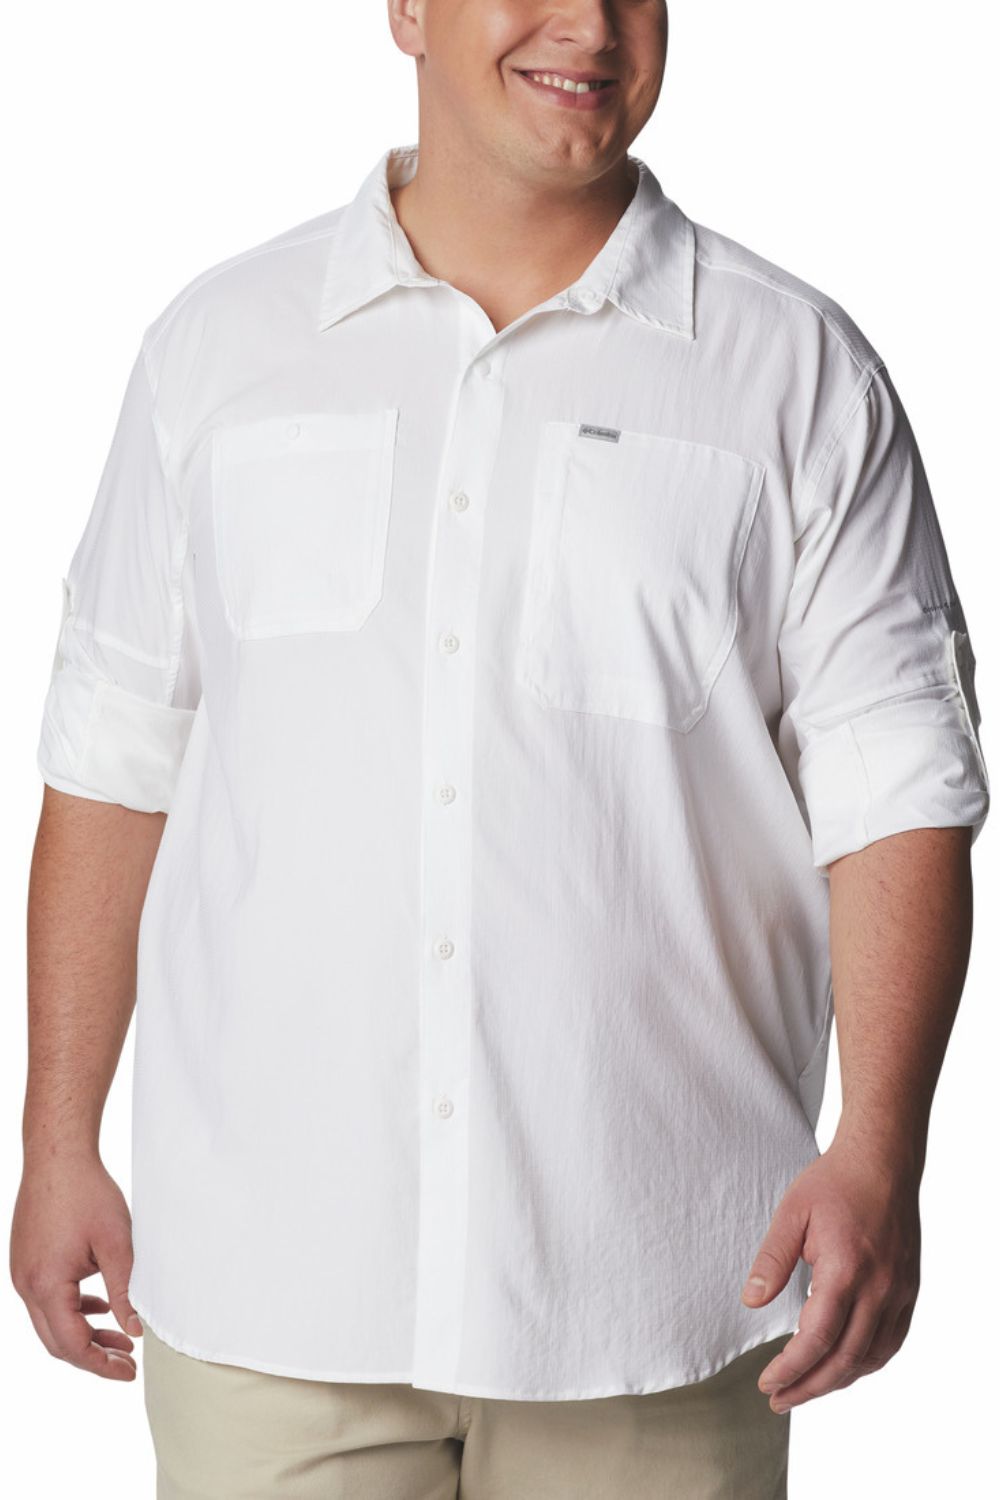 Men's Long Sleeves UV Shirt UPF 50+ - Silver Ridge Utility Lite Columbia